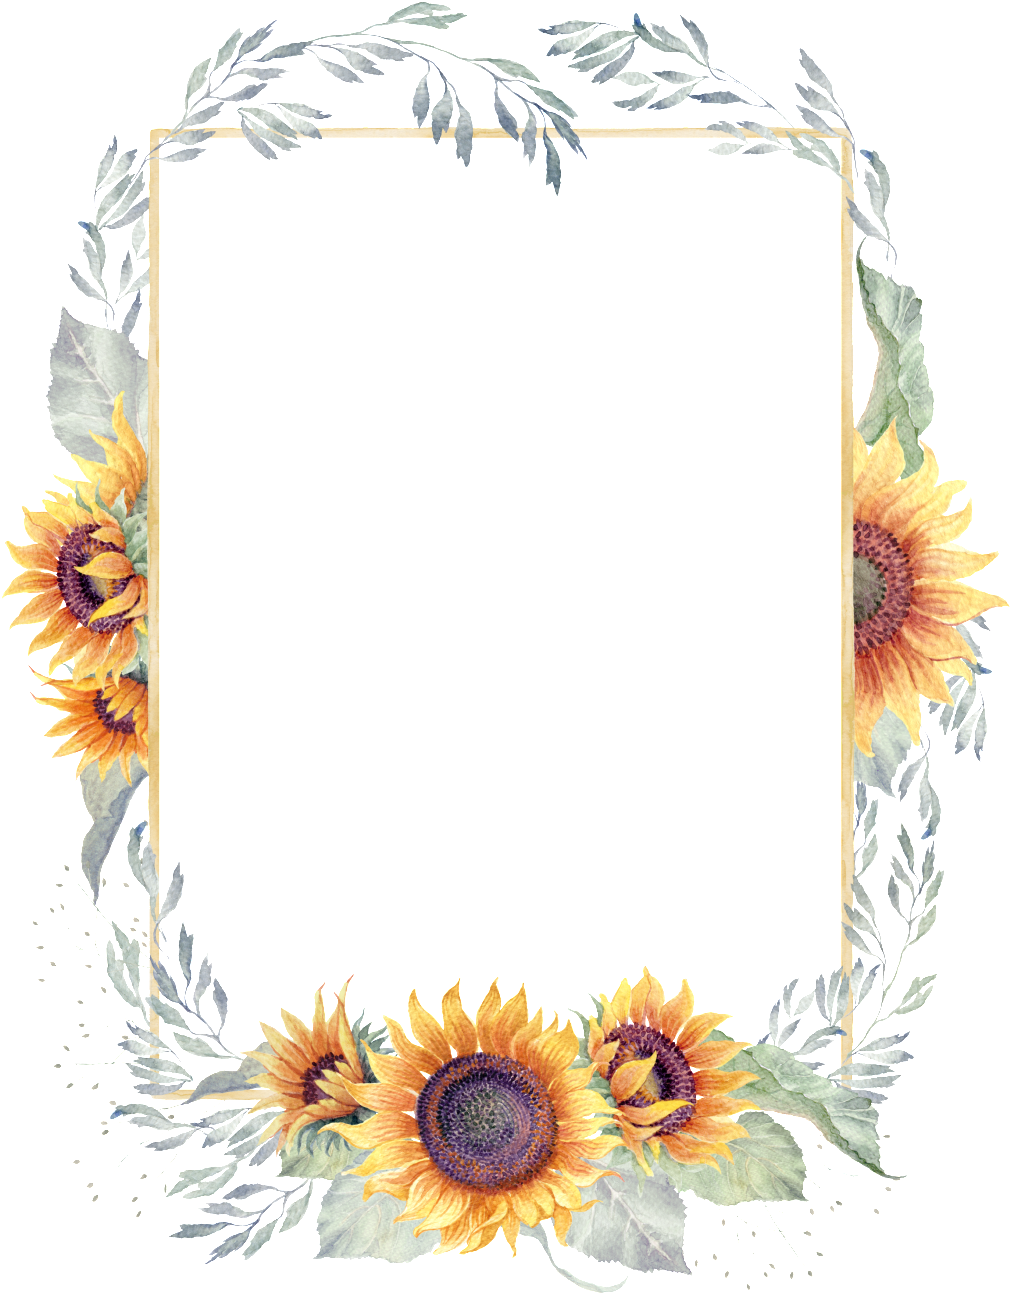 Sunflower Frame PNG Image